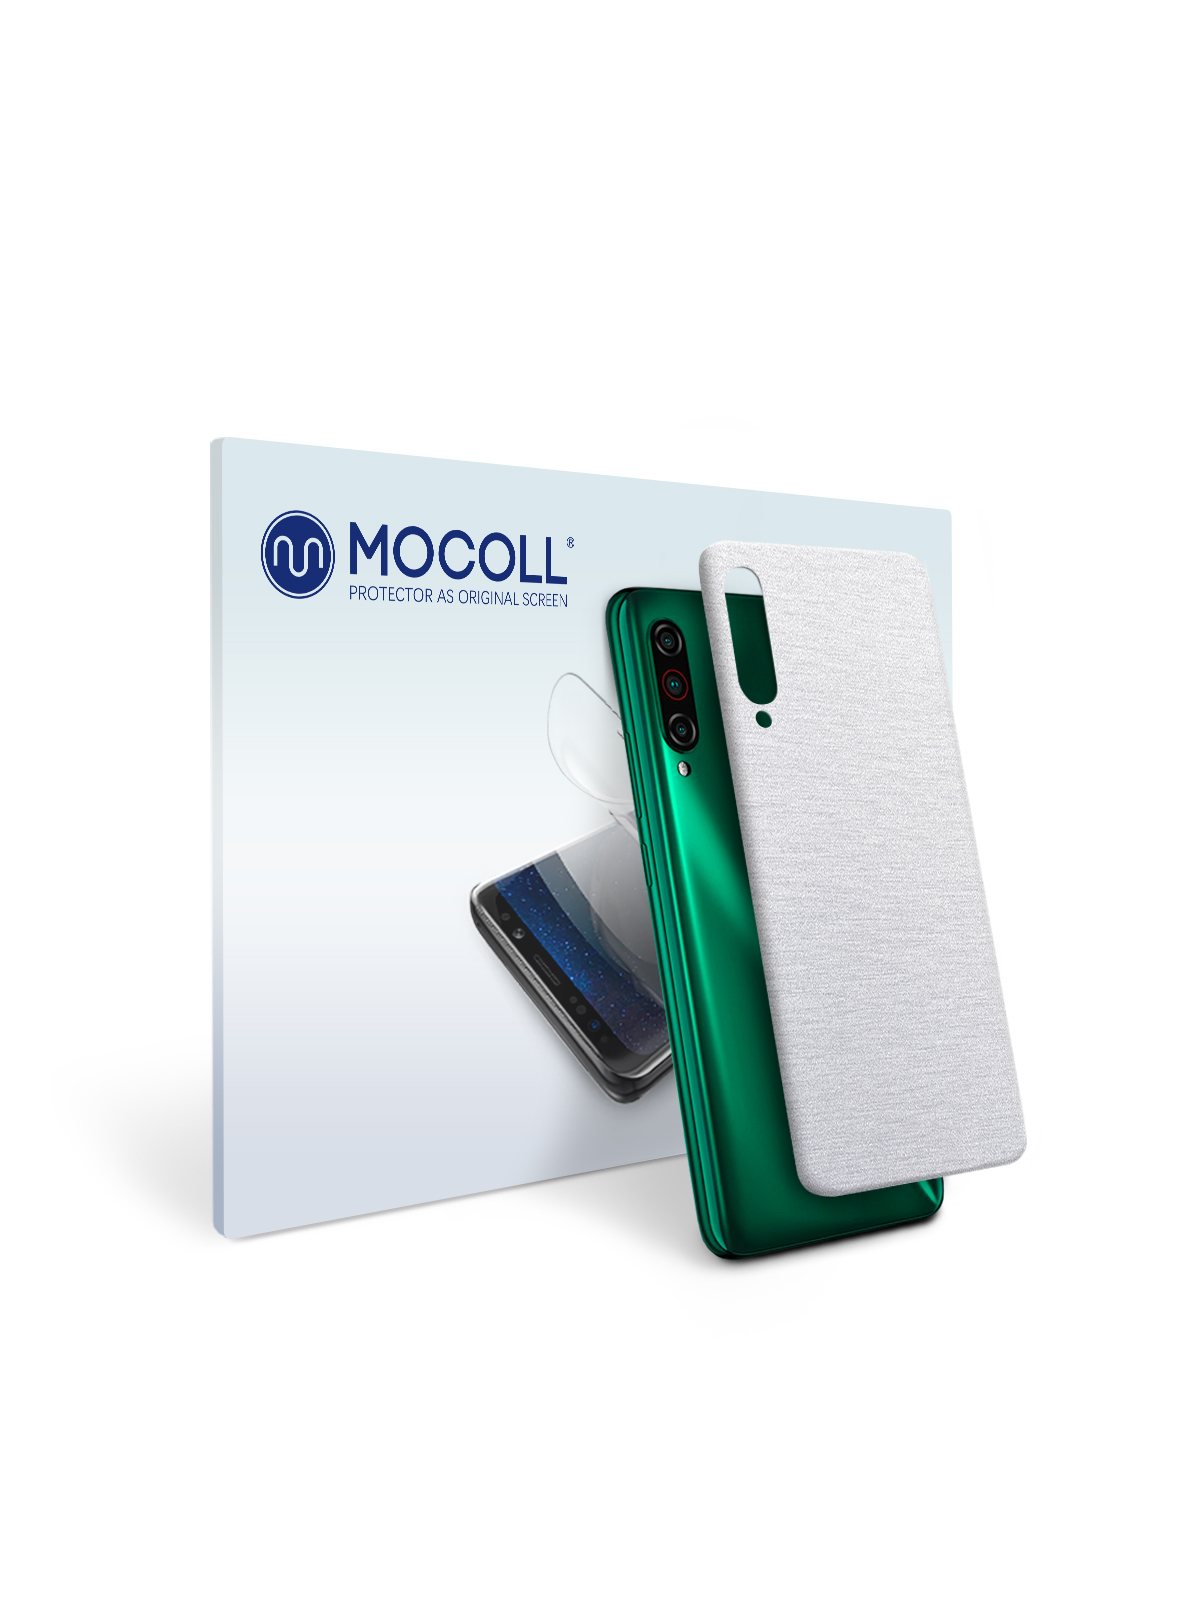 

Пленка защитная MOCOLL для задней панели Meizu Meilan Note 6 Металлик Серебристый